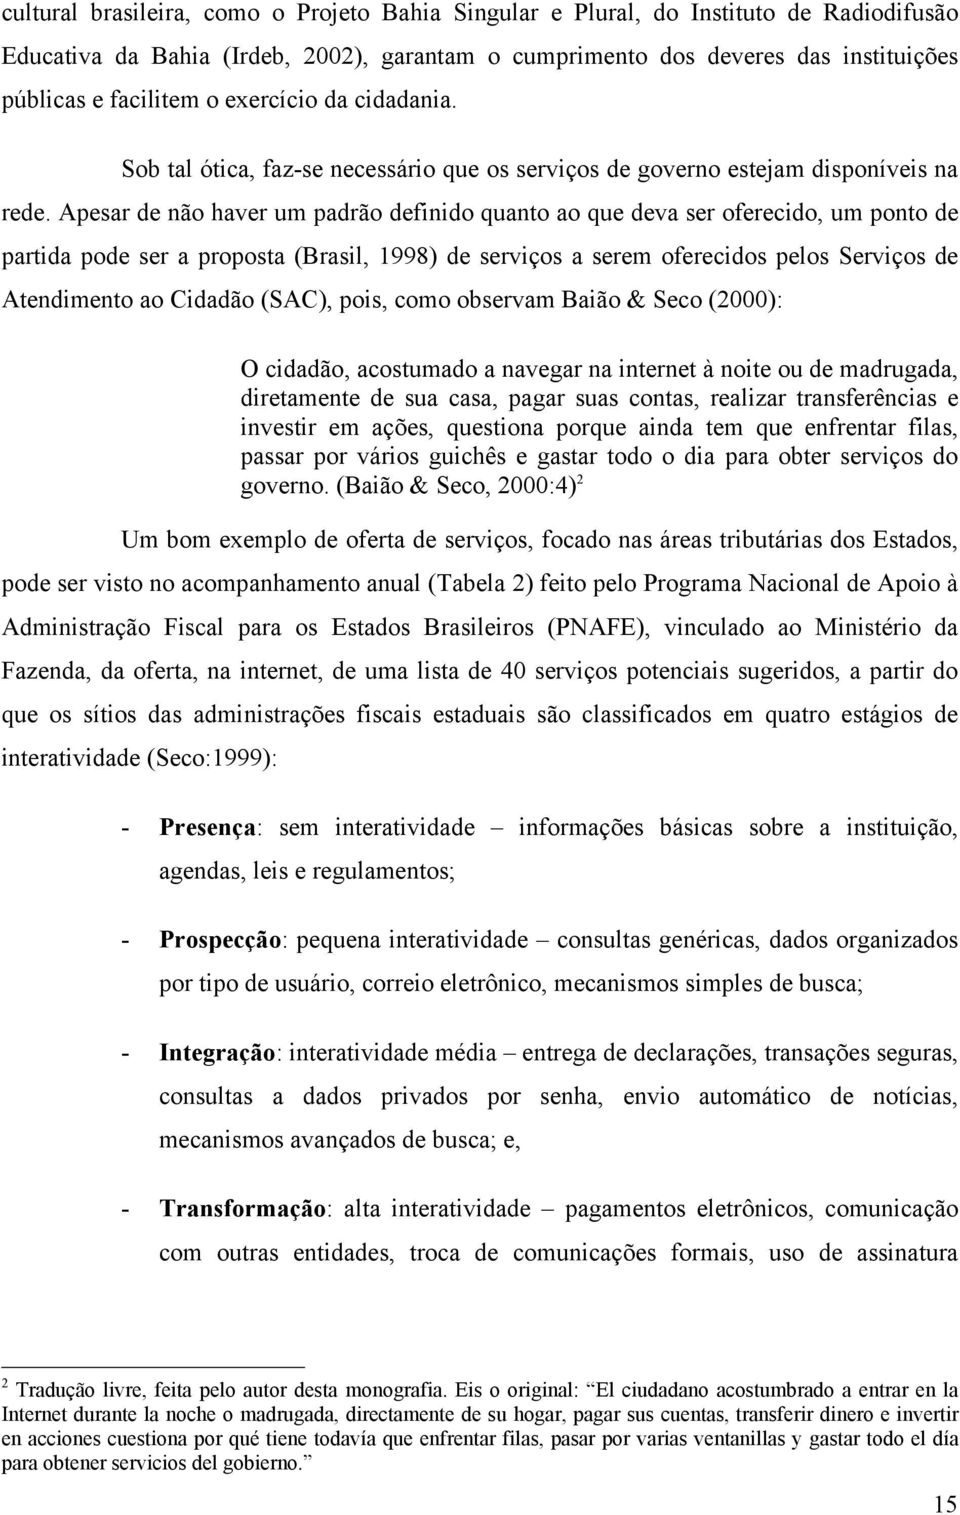 Apesar de não haver um padrão definido quanto ao que deva ser oferecido, um ponto de partida pode ser a proposta (Brasil, 1998) de serviços a serem oferecidos pelos Serviços de Atendimento ao Cidadão